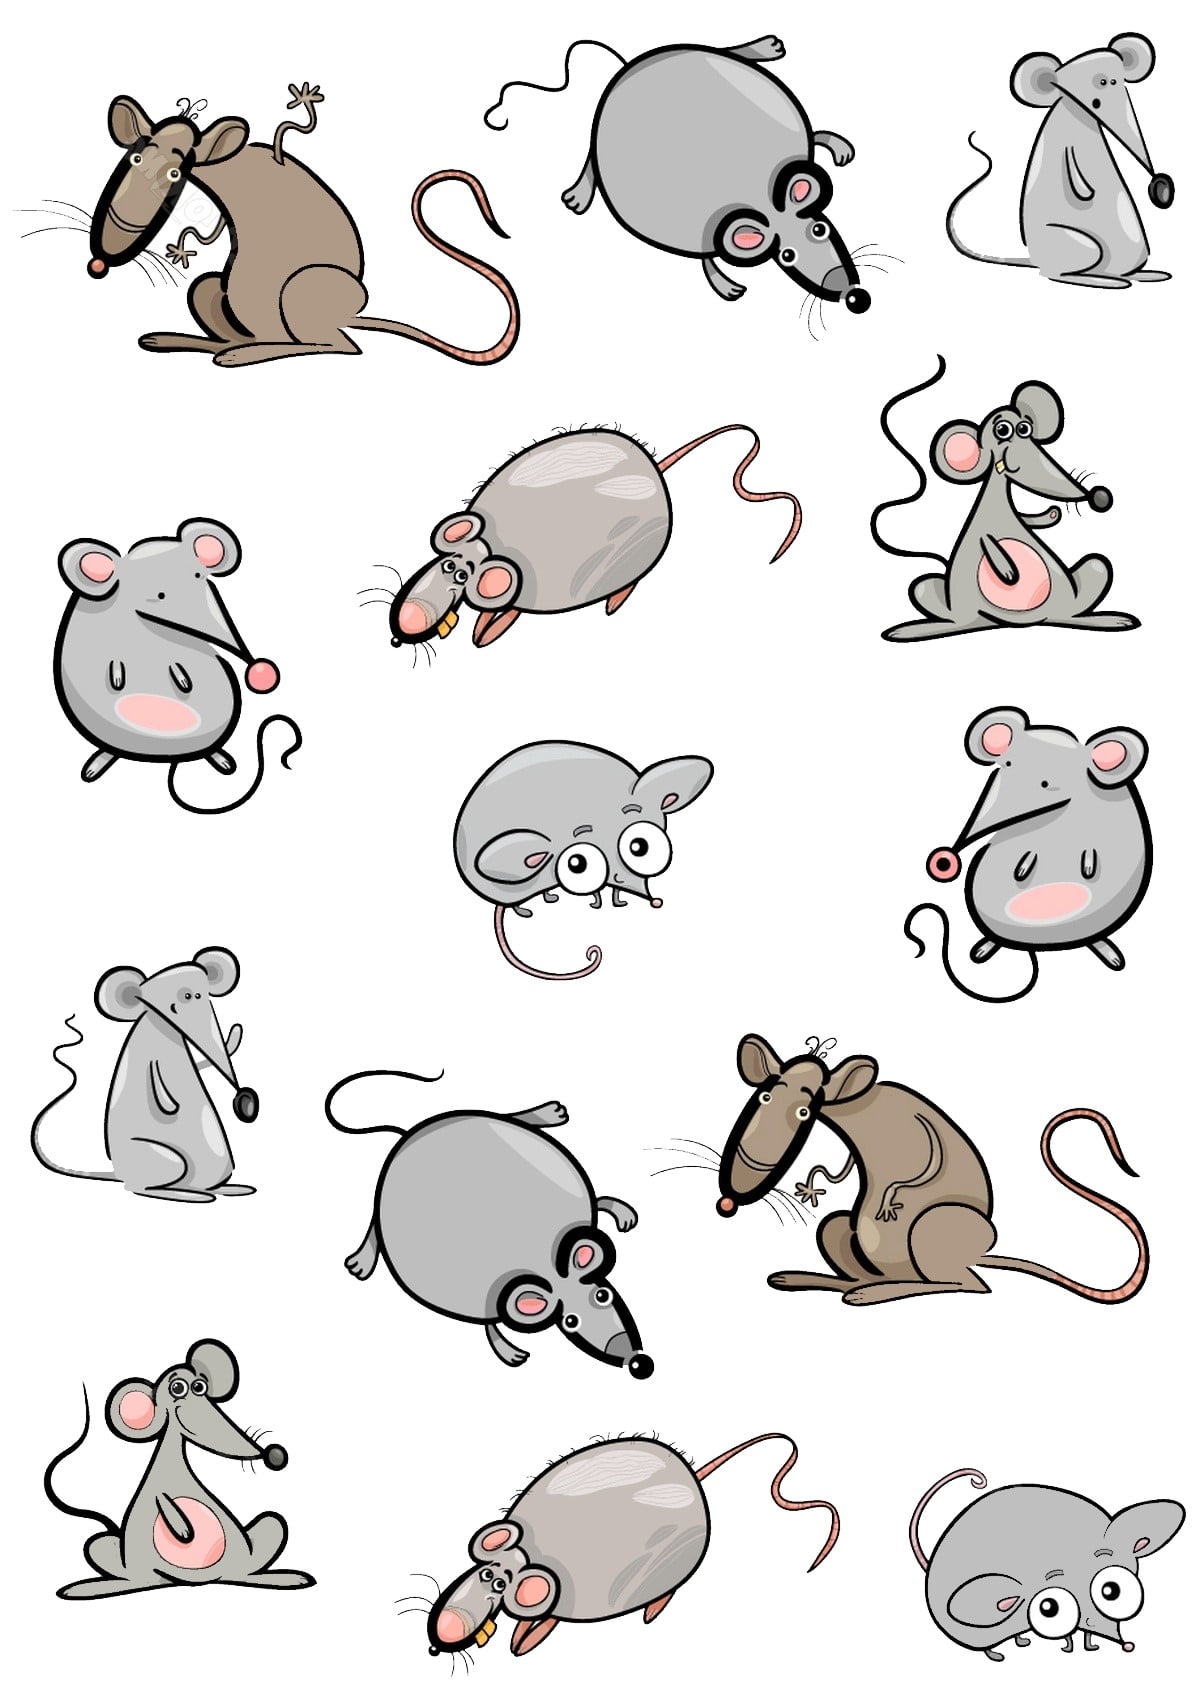 Найти мышей. Мышки задания для детей. Найди мышь. Задание Найди мышонка. Найди мышку на картинке.